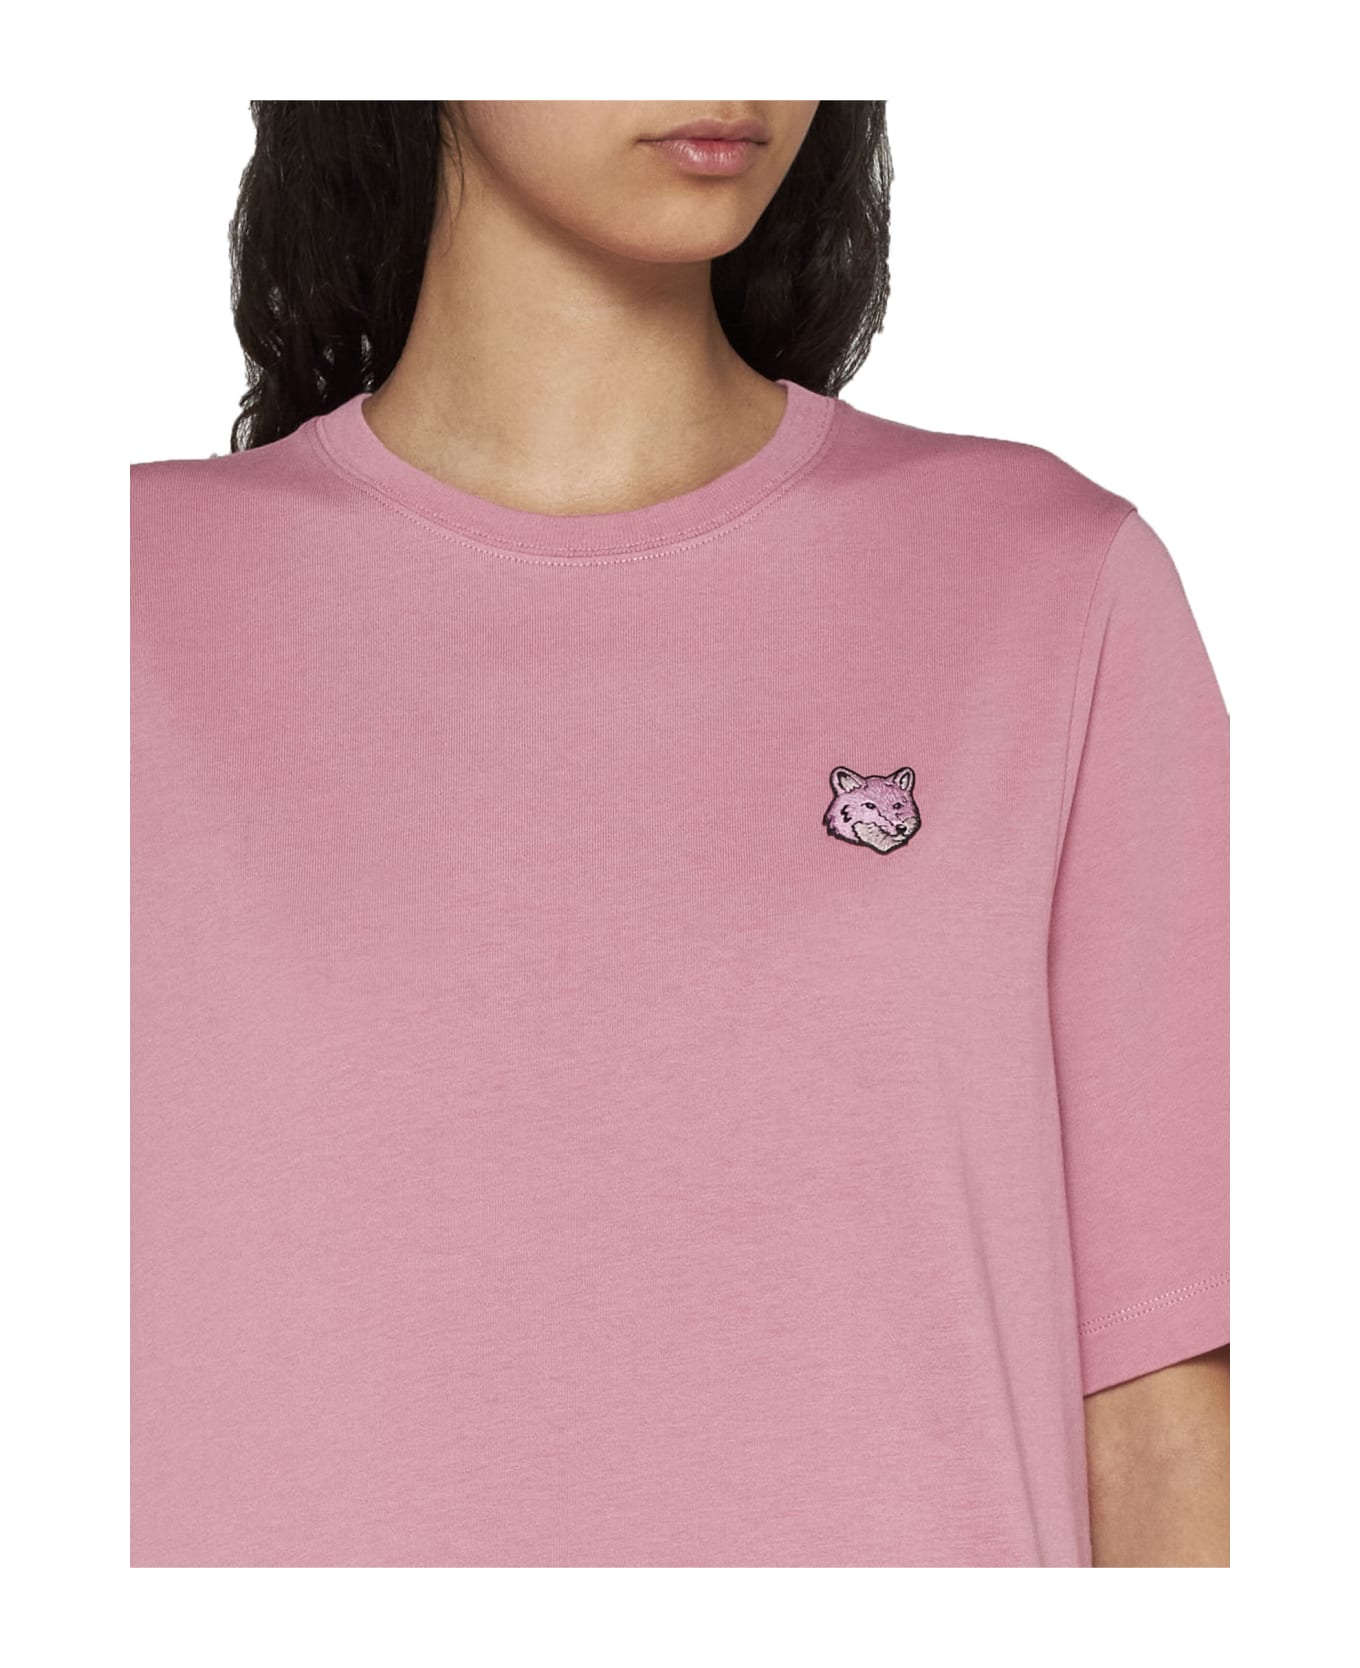 Maison Kitsuné T-Shirt - Rosebud